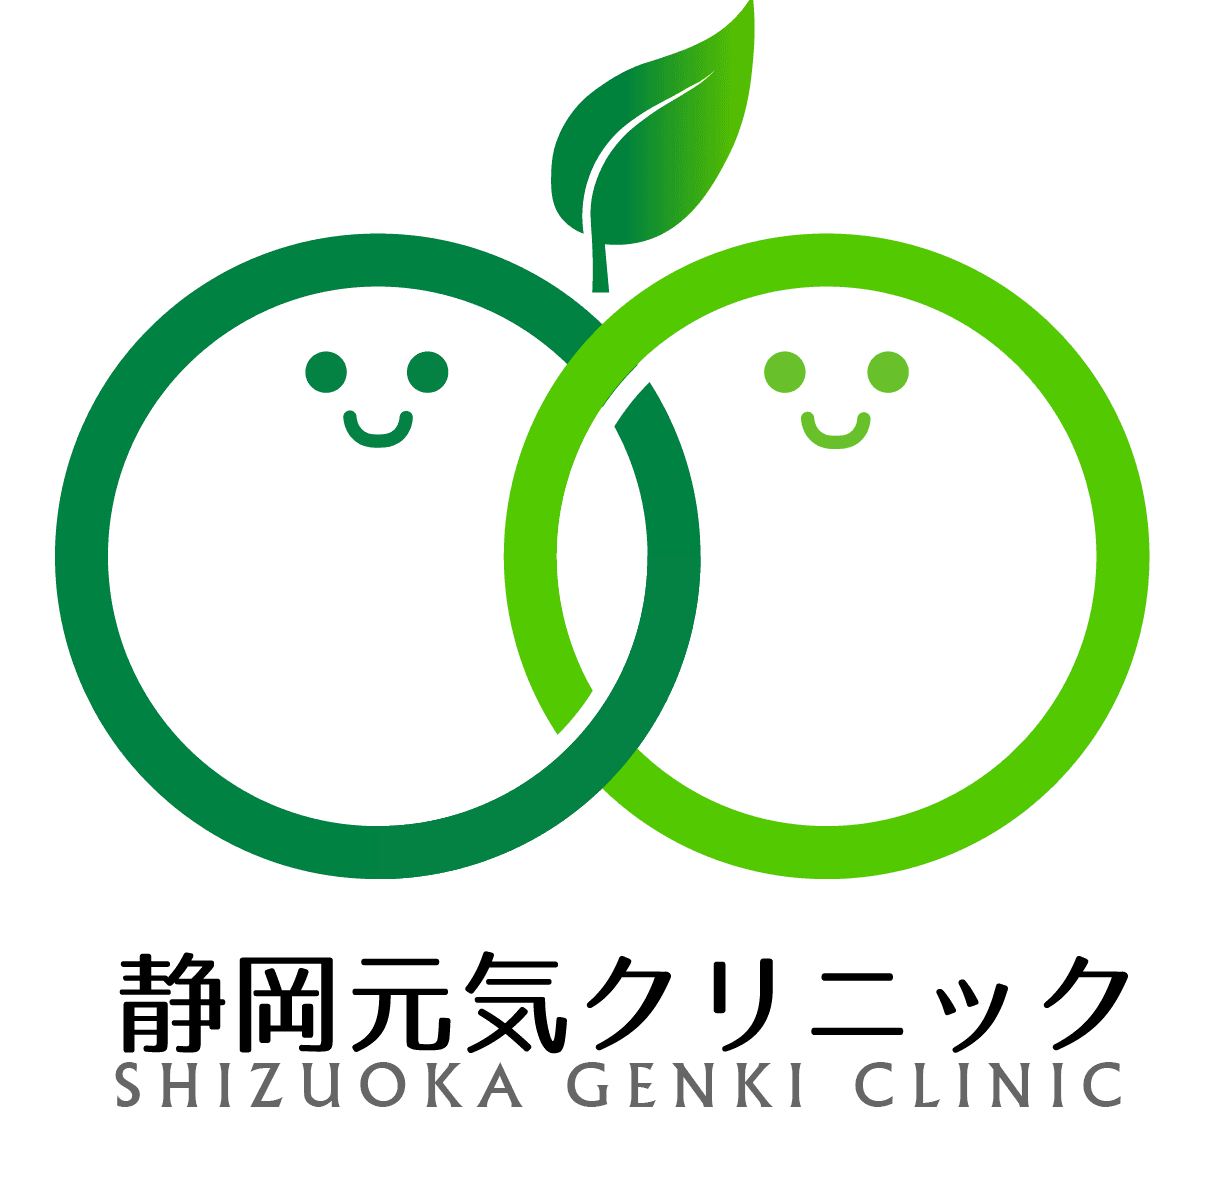 医療法人社団立志会 静岡元気クリニックのロゴ画像